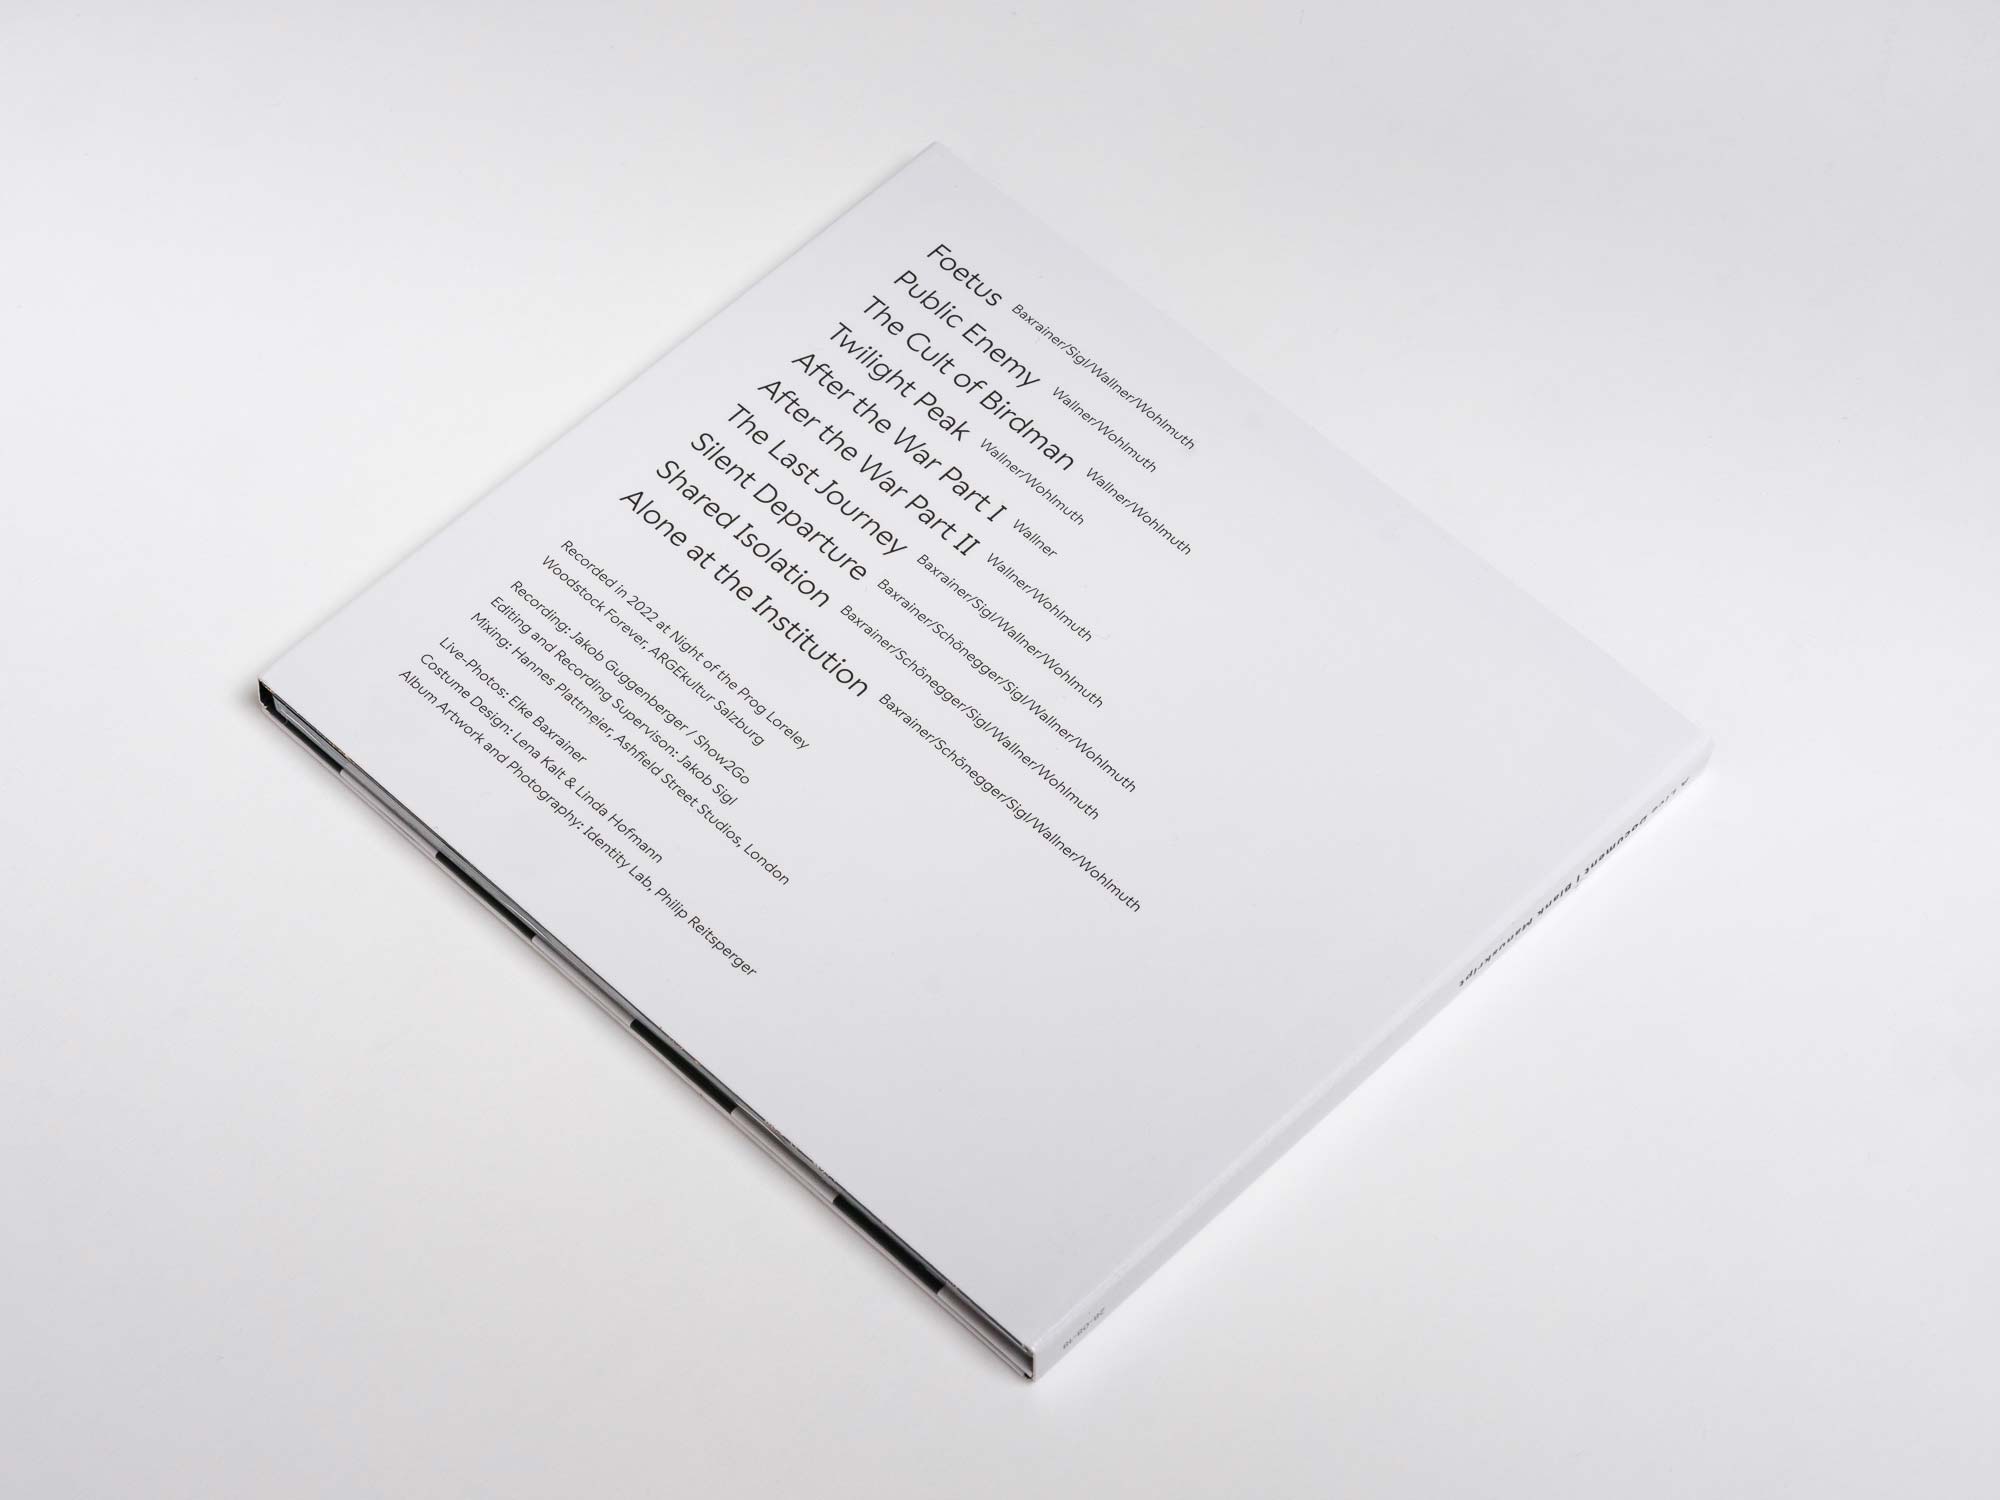 Dieses Foto zeigt das Album Artwork der Veröffentlichung "Live Document" von Blank Manuskript.